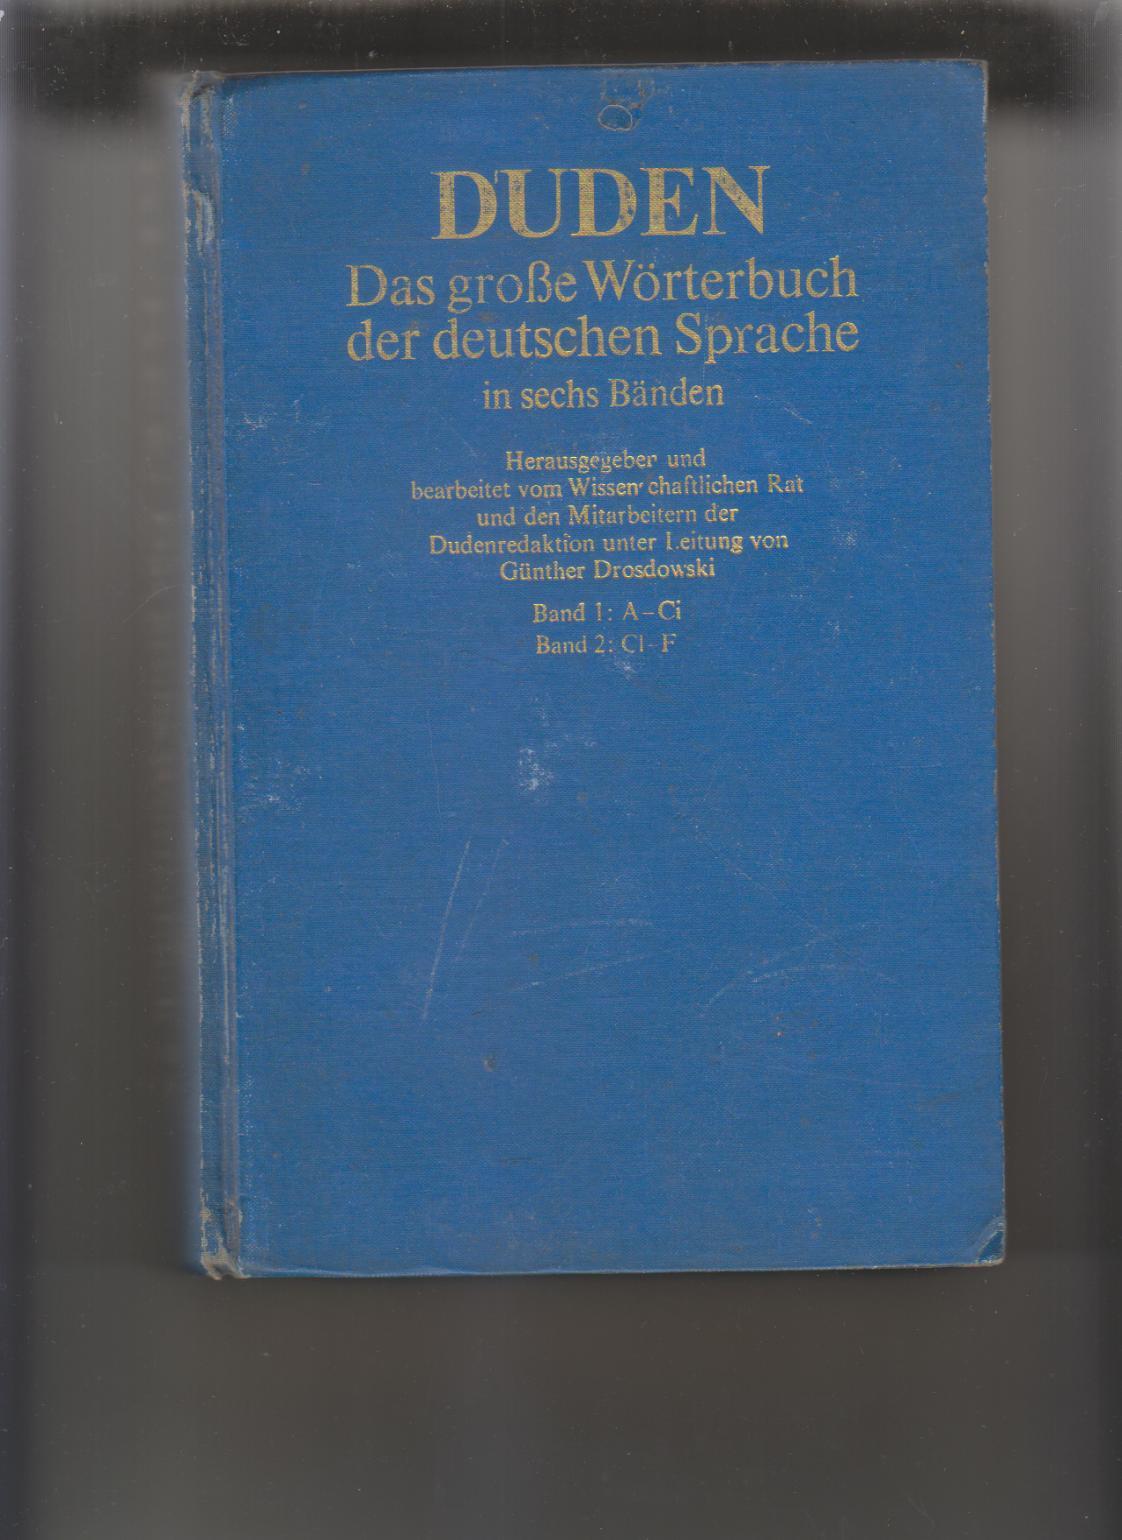 《杜登德语词典》共2册分4部分Bnd1:A-G,Bnd2:CI-F,Bnd3:G-Kal,Bnd4:Kam-N，2册书厚约100毫米，重约4斤半（2250克）